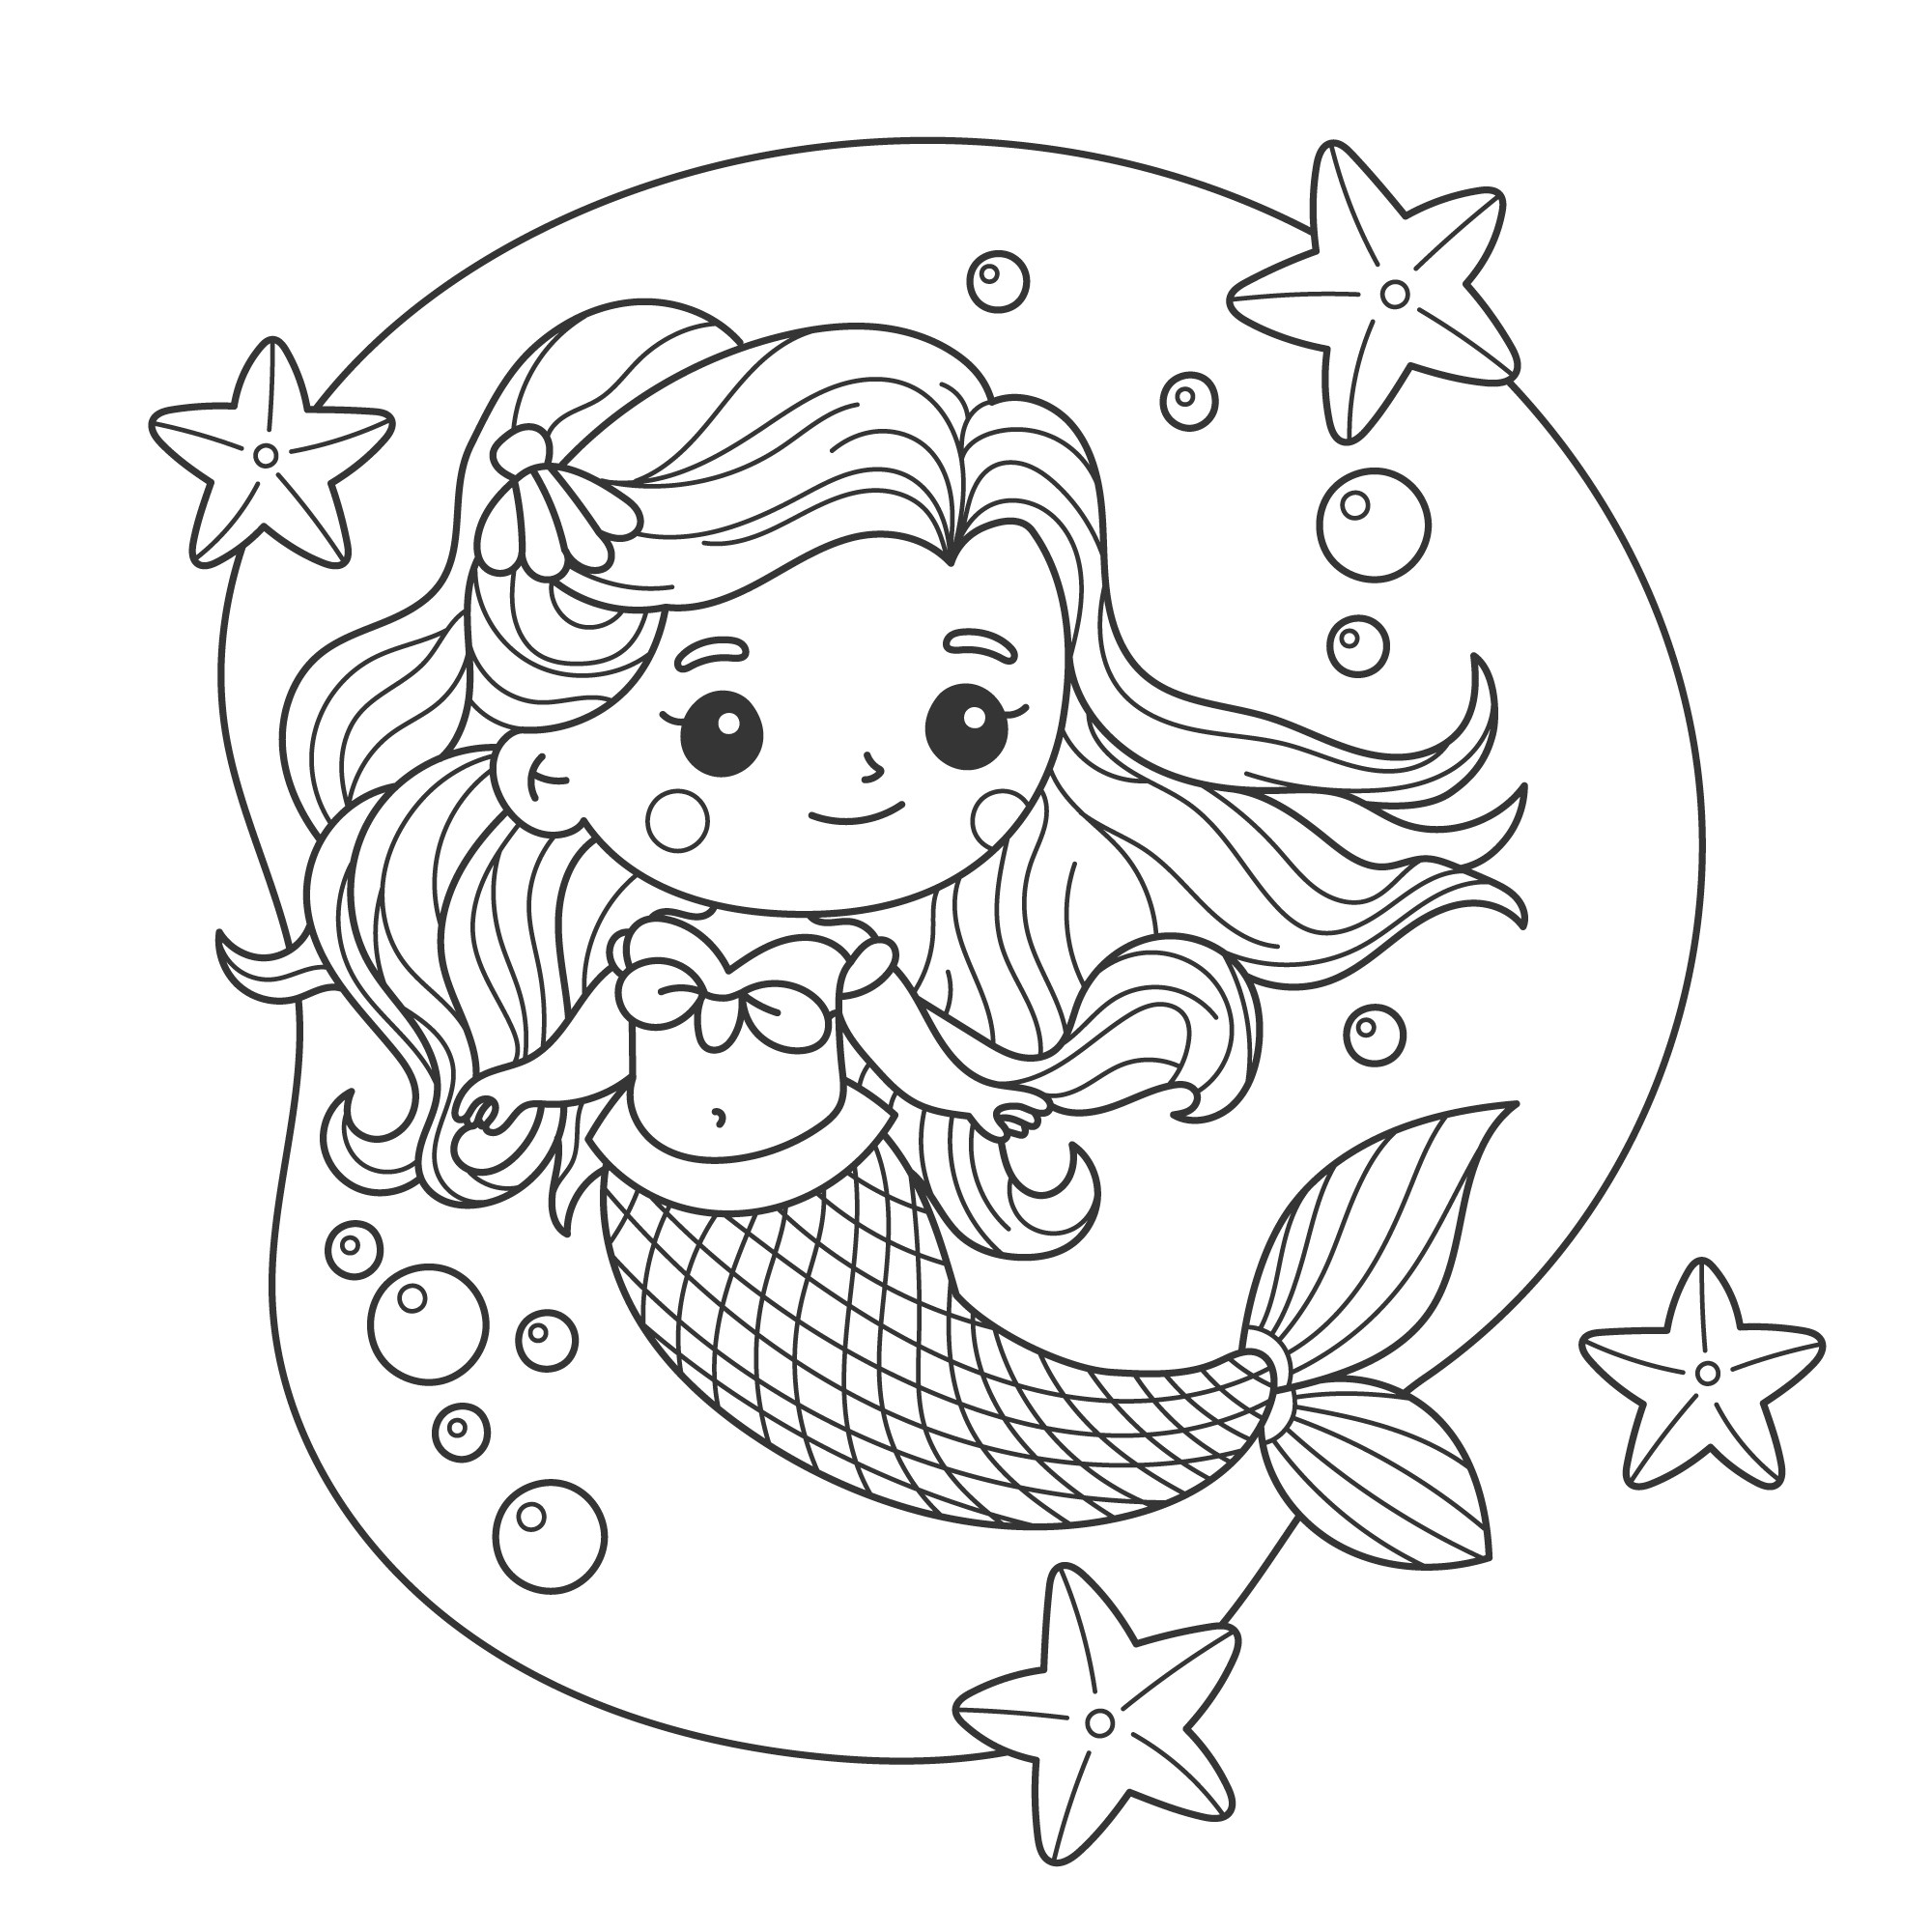 Раскраска для детей: симпатичная русалка с морской звездой